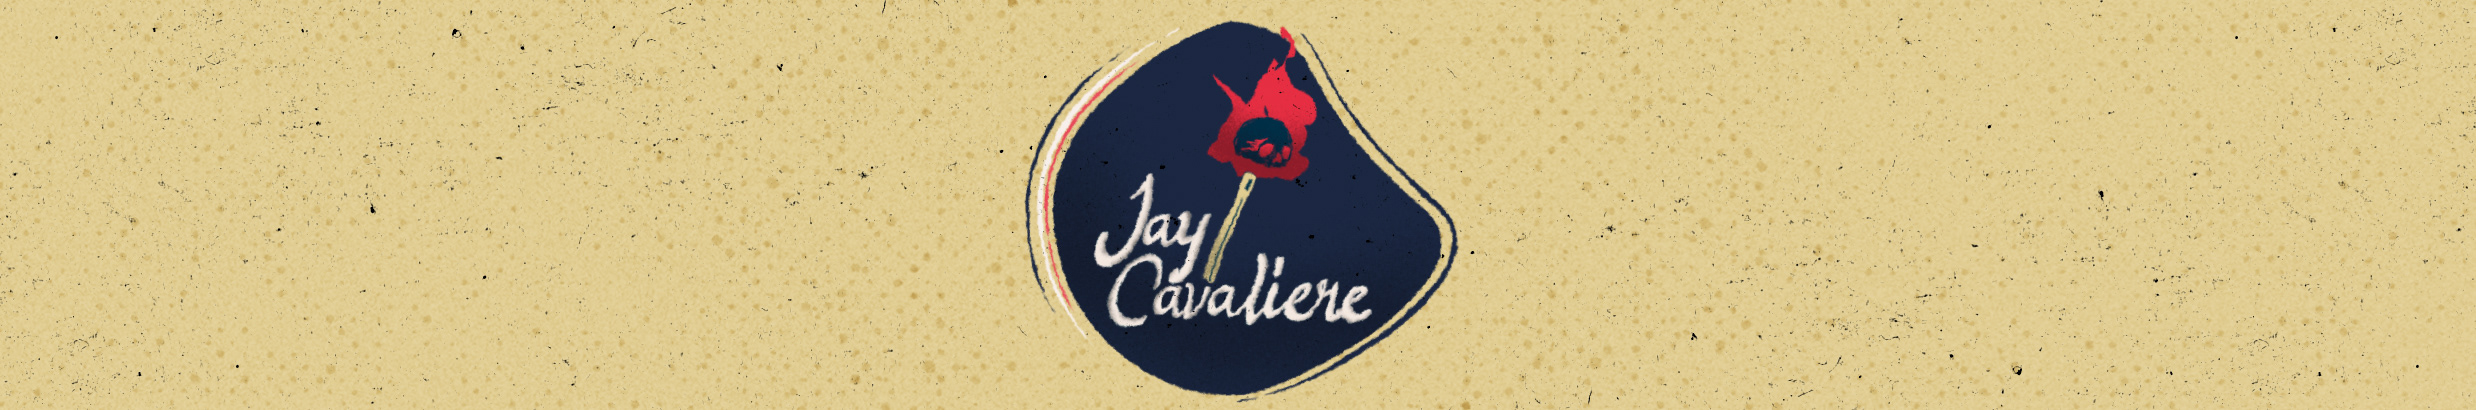 Profil-Banner von Jay Cavaliere